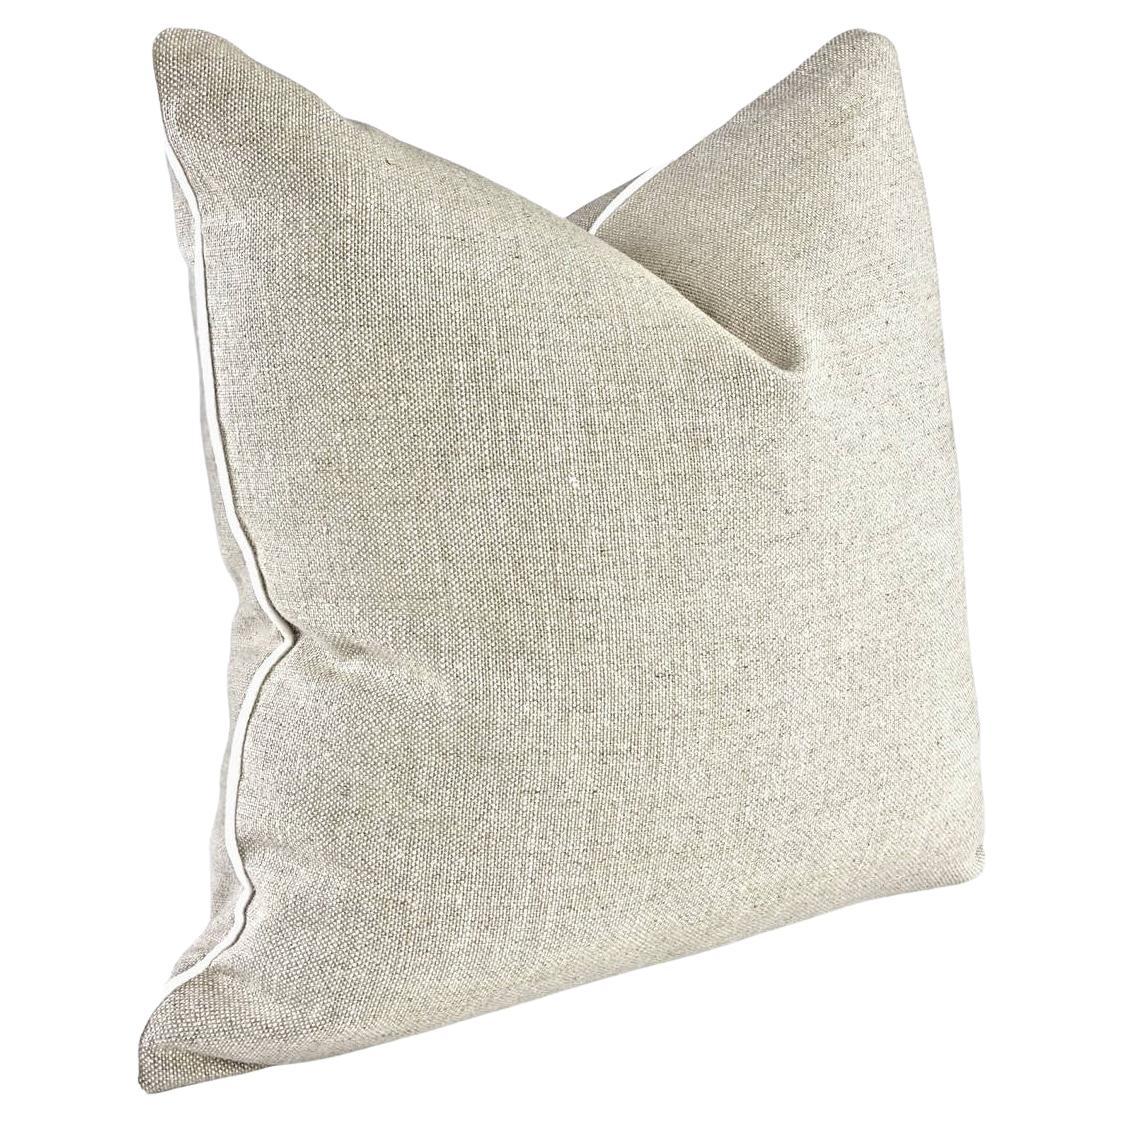 Vintage Linen Pillow - 20x20" For Sale